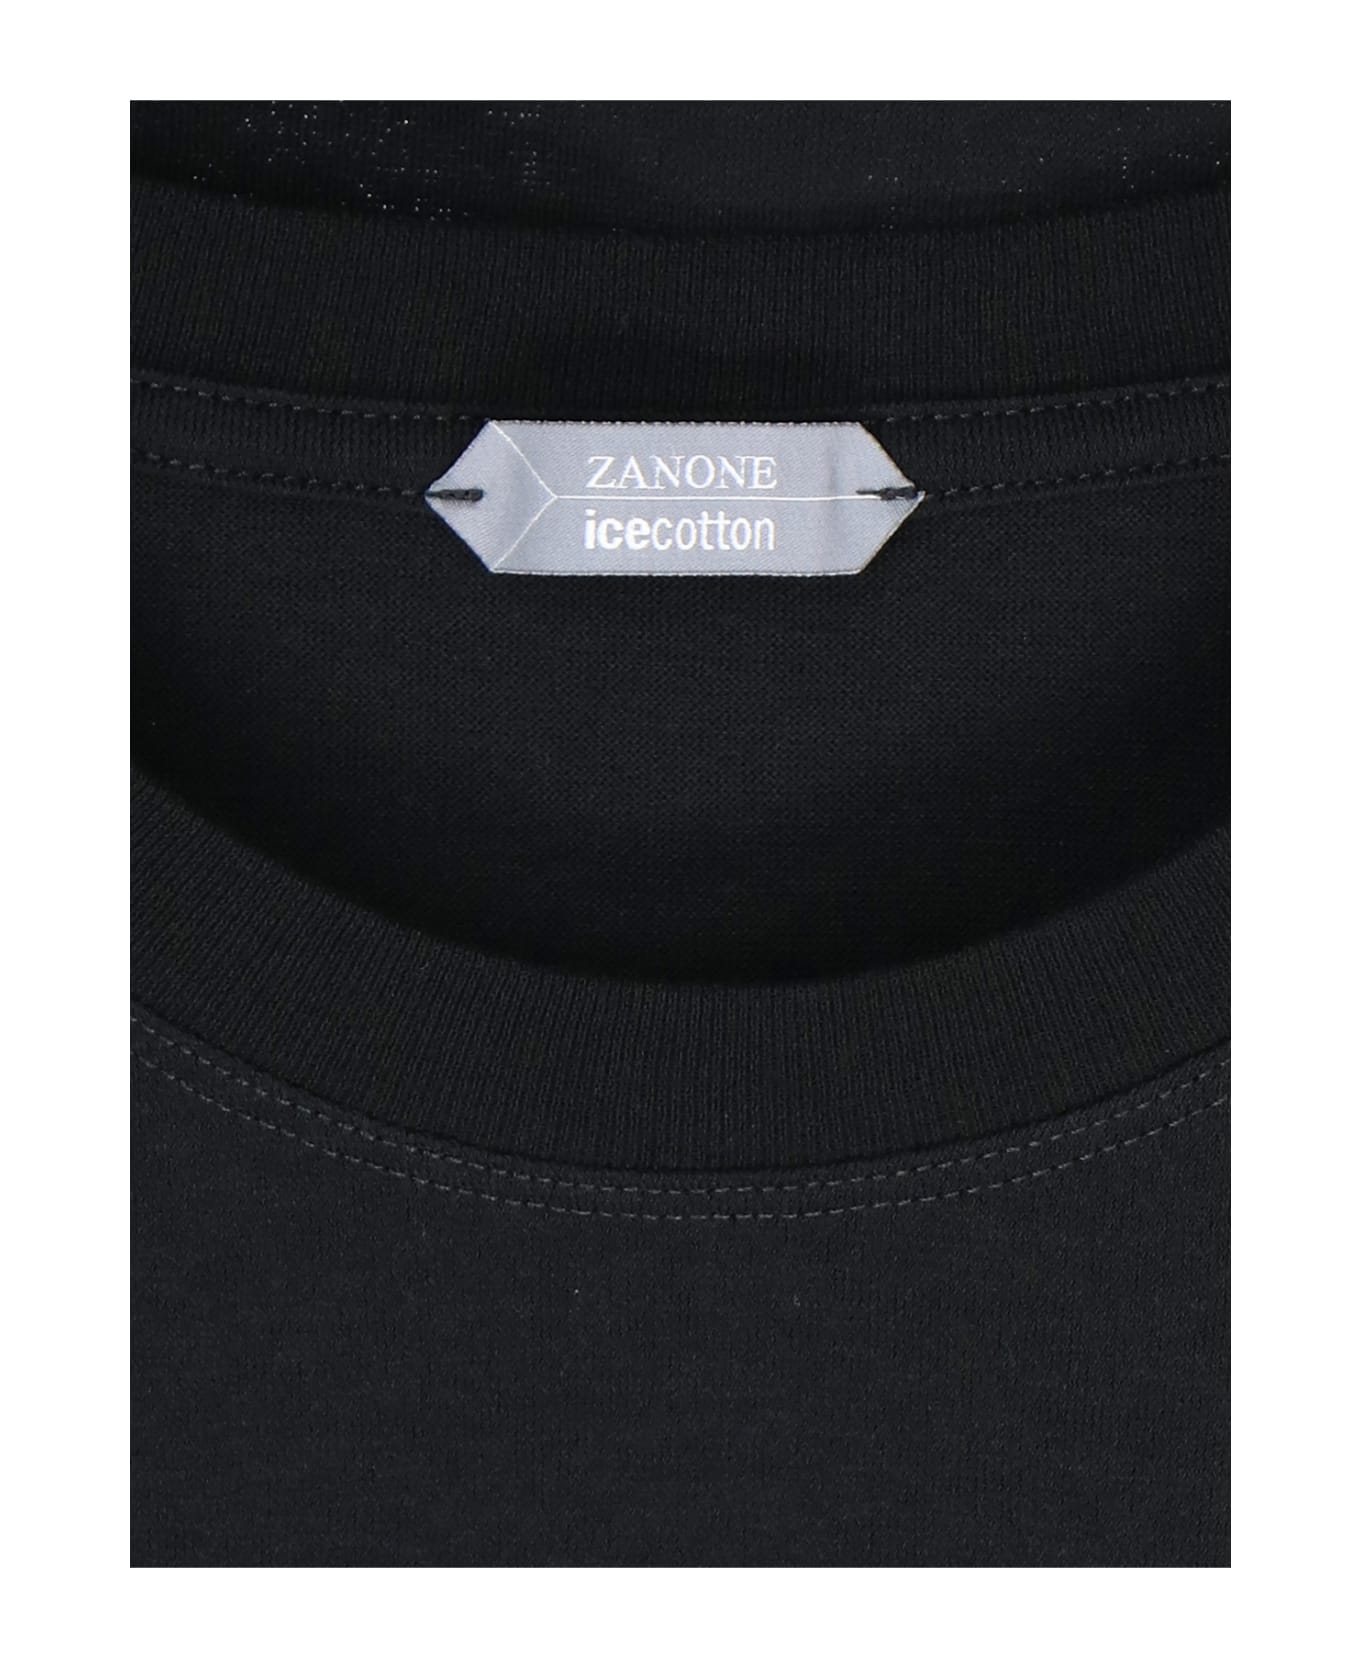 Zanone Icecotton T-shirt - Nero